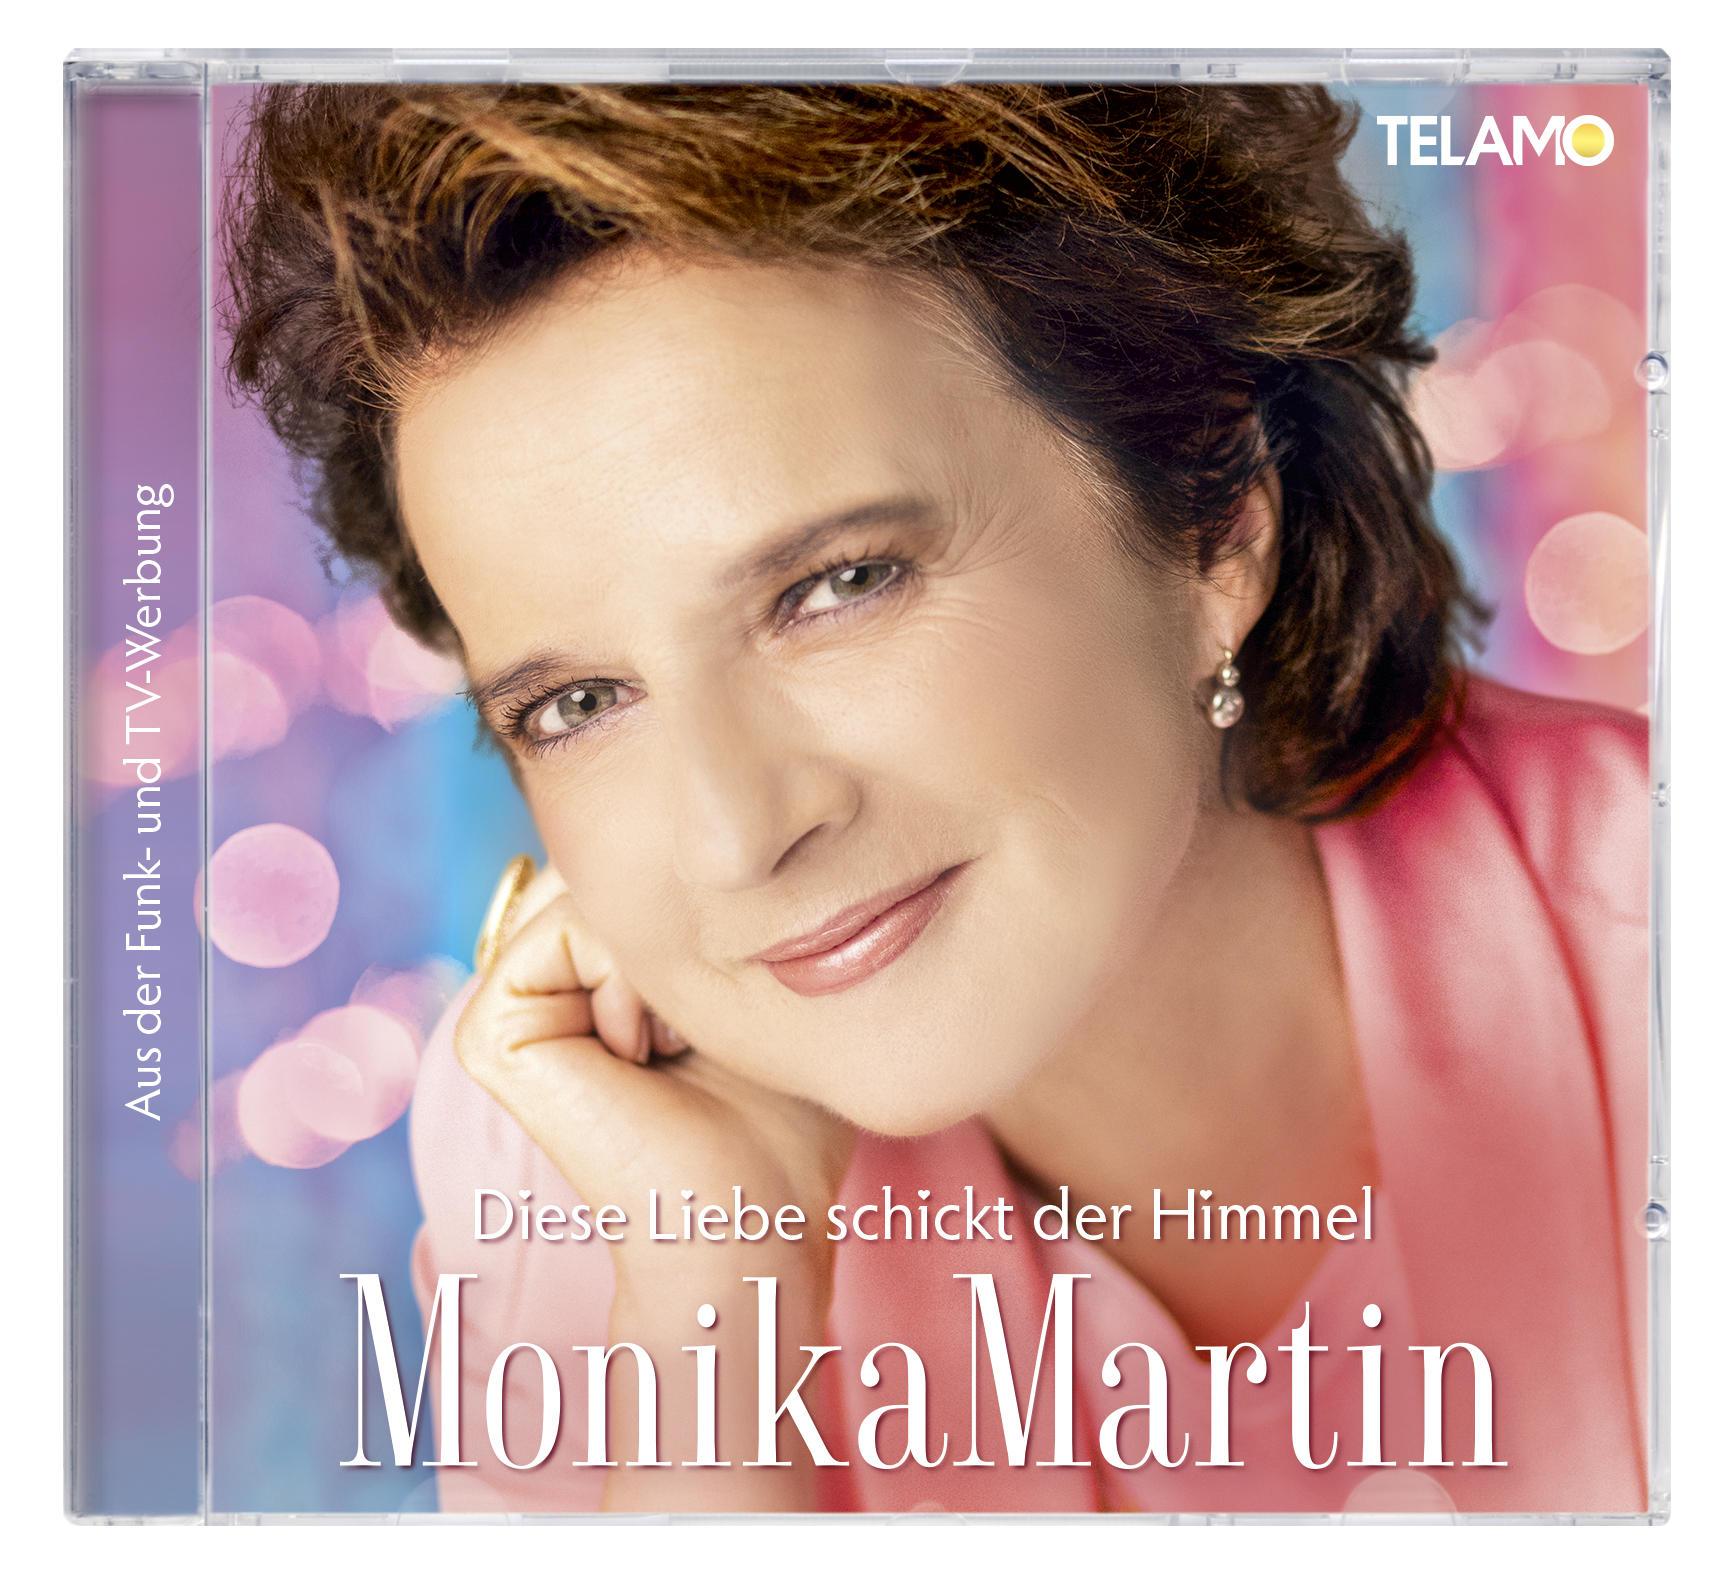 Monika Martin - der Diese - Liebe (CD) Himmel schickt